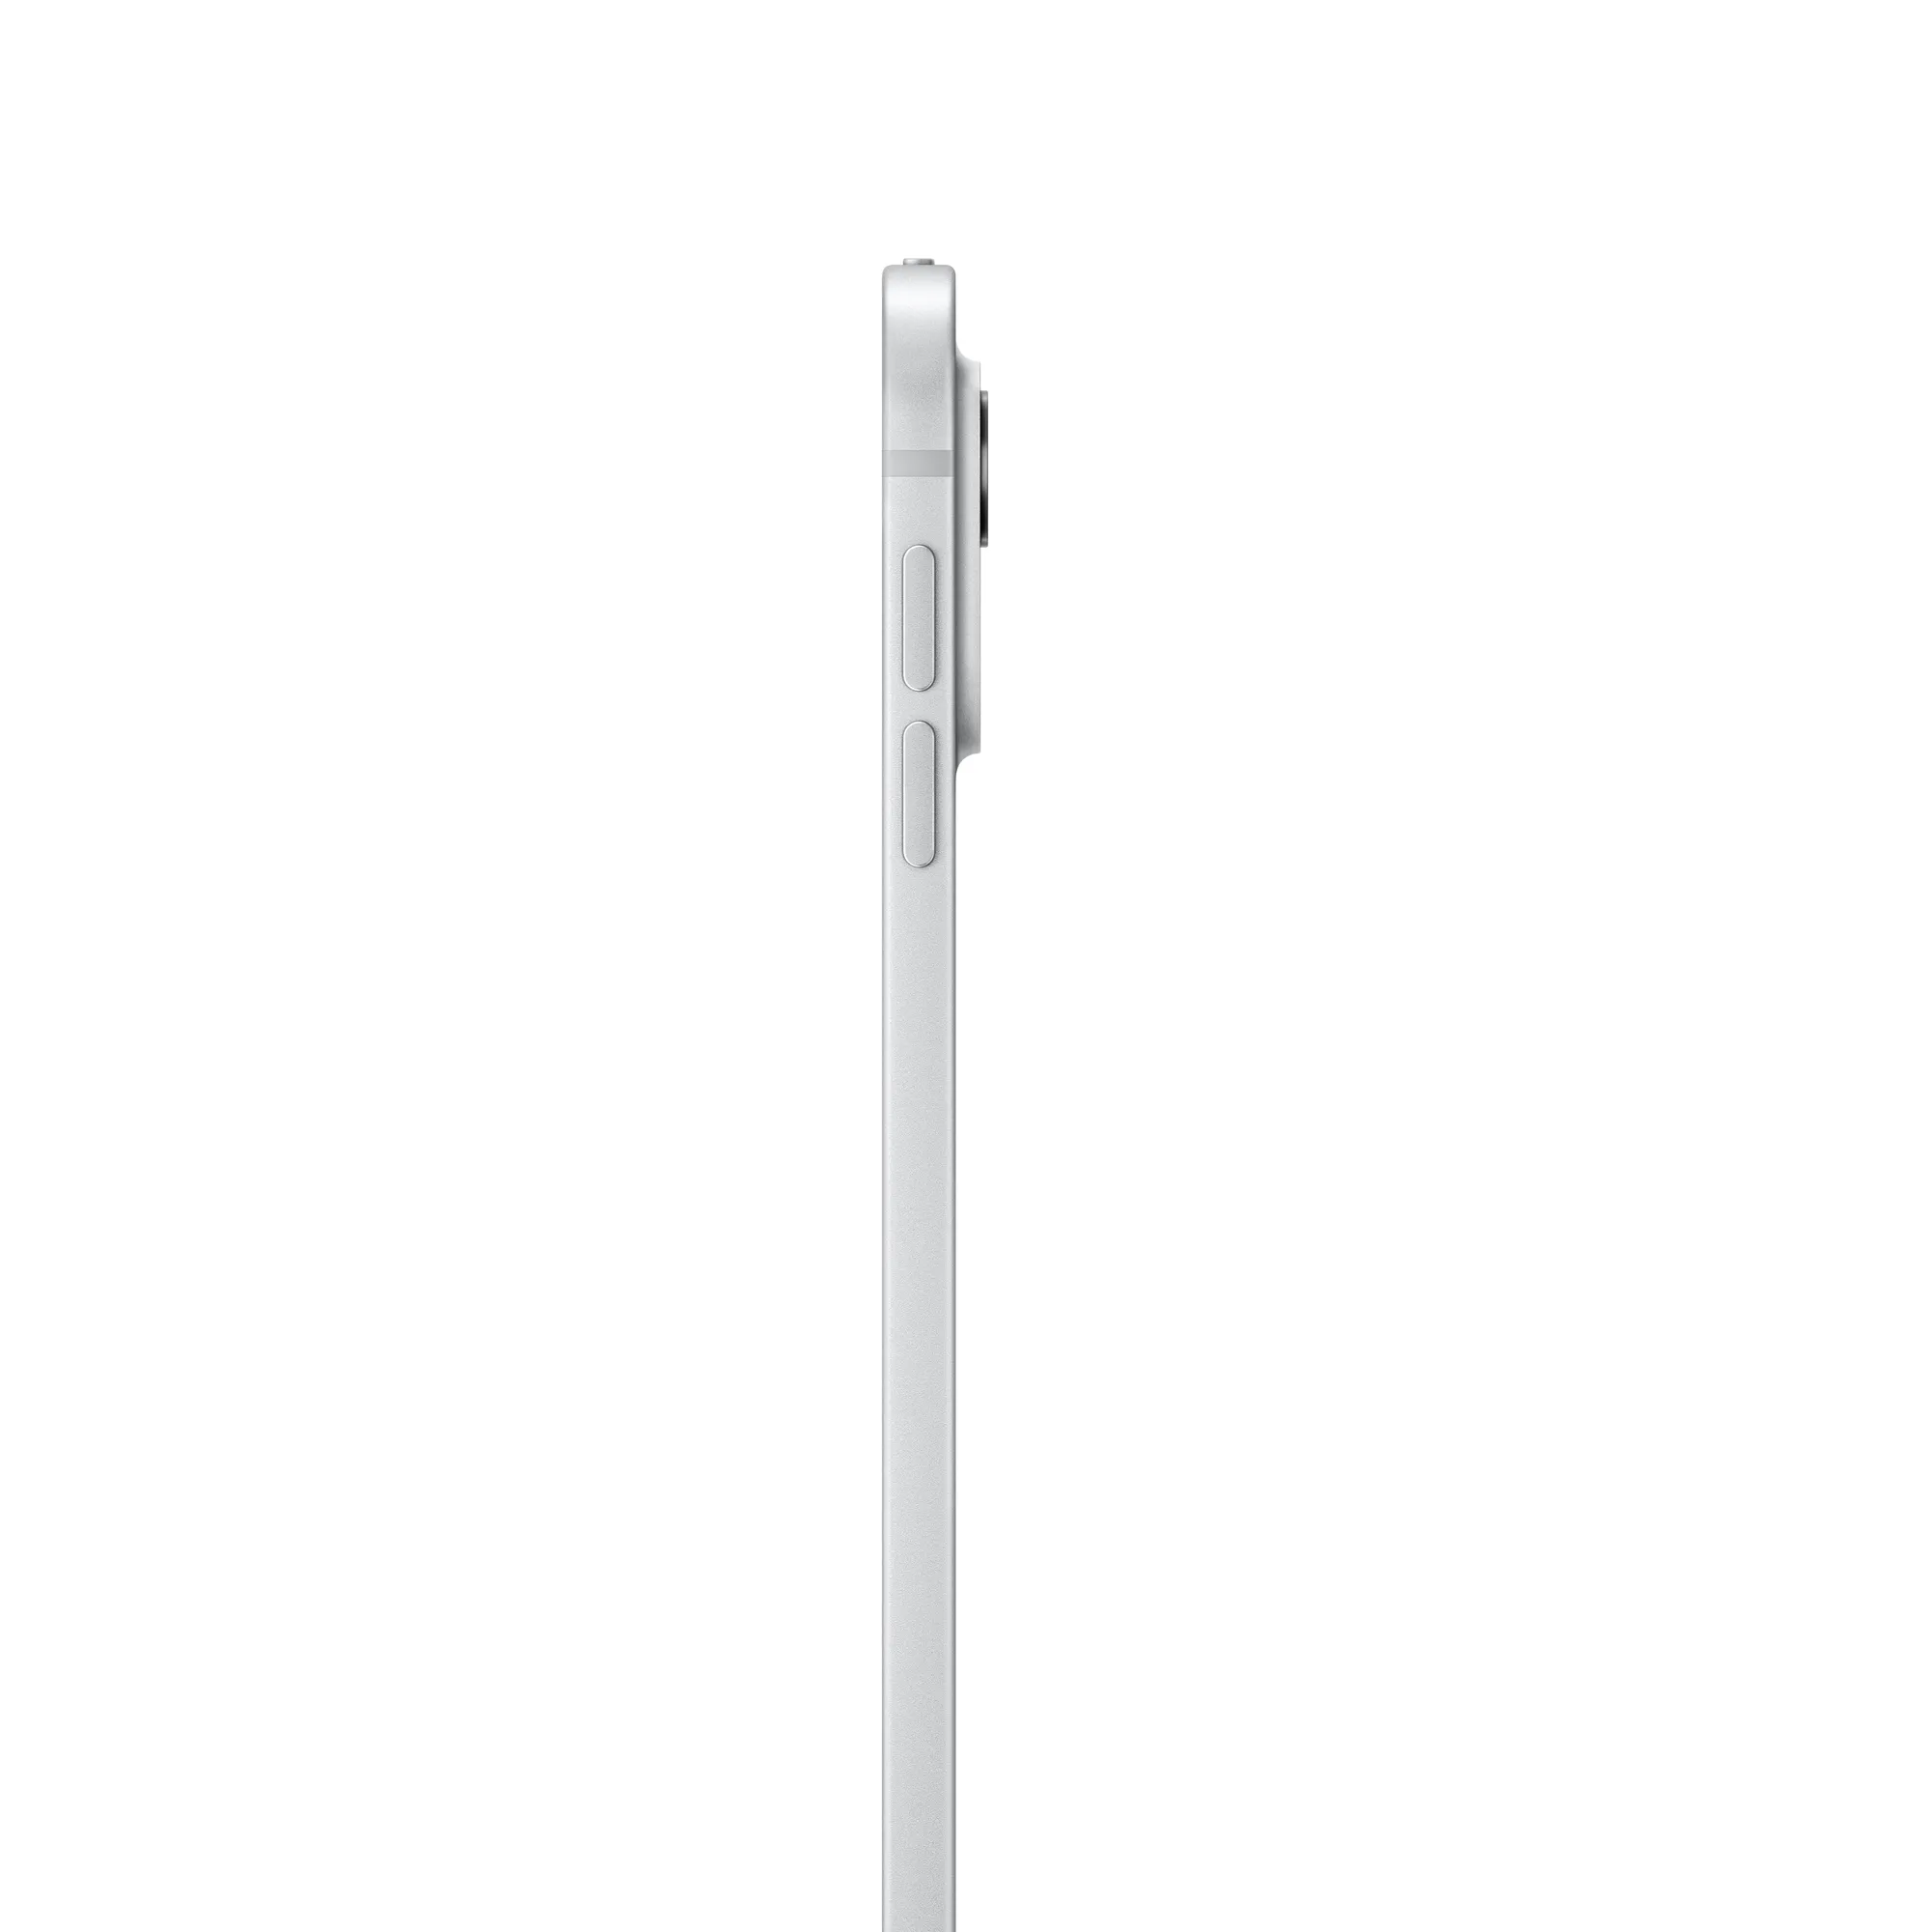 13 hüvelykes iPad Pro, Wi-Fi + Cellular, 1 TB, normál üveg – ezüst